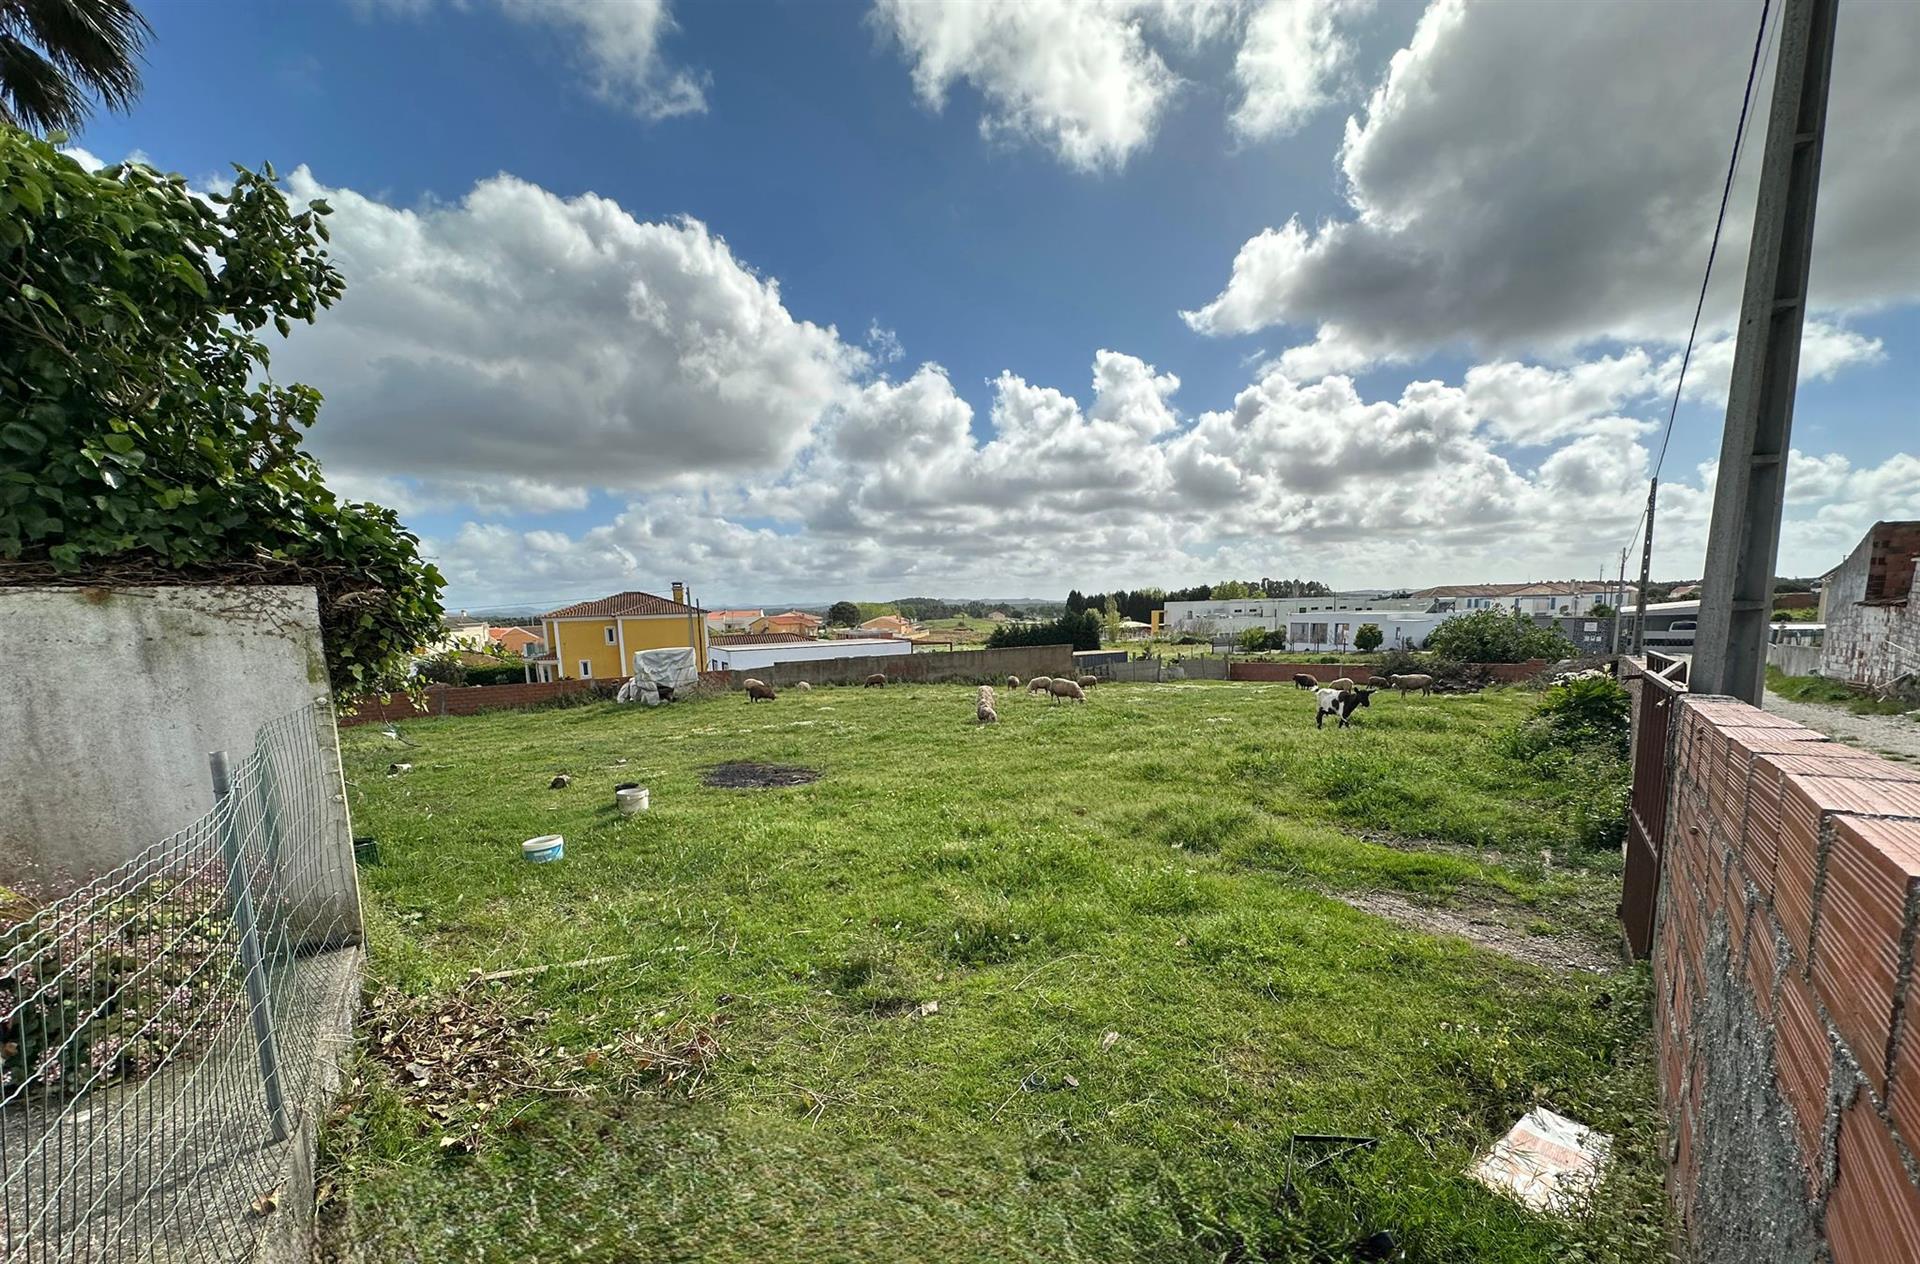 Grond voor de bouw van huis, centrum van het dorp, in de buurt van Torres Vedras